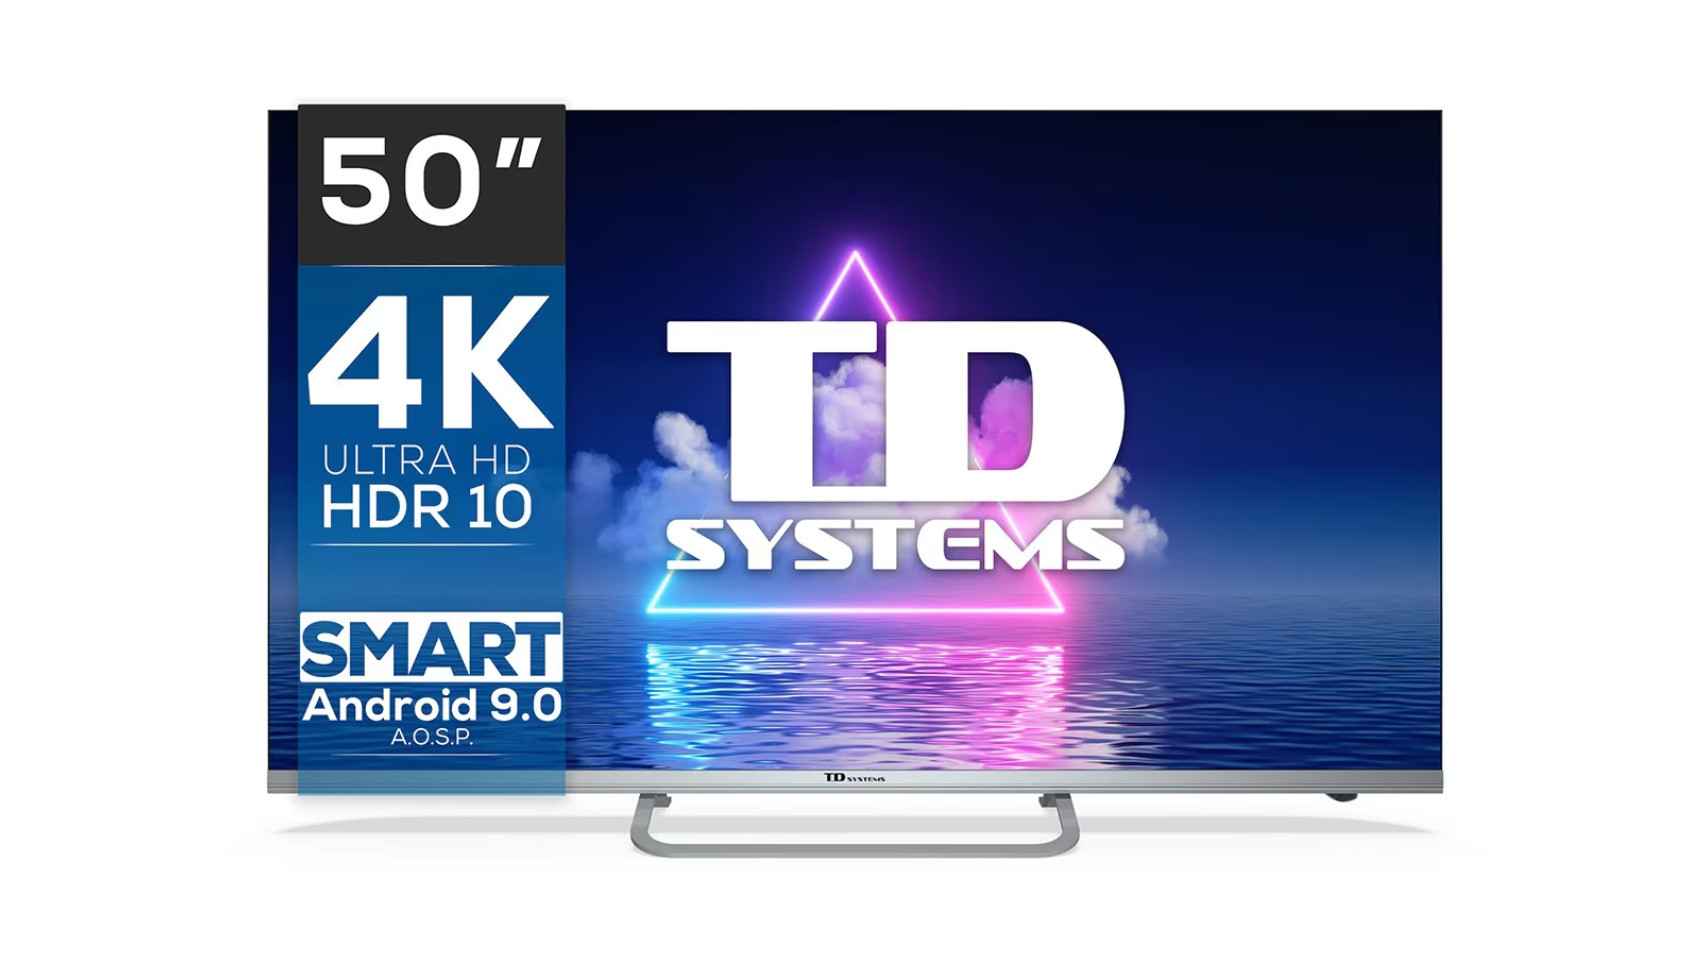 El televisor TD Systems en oferta en El Corte Inglés.